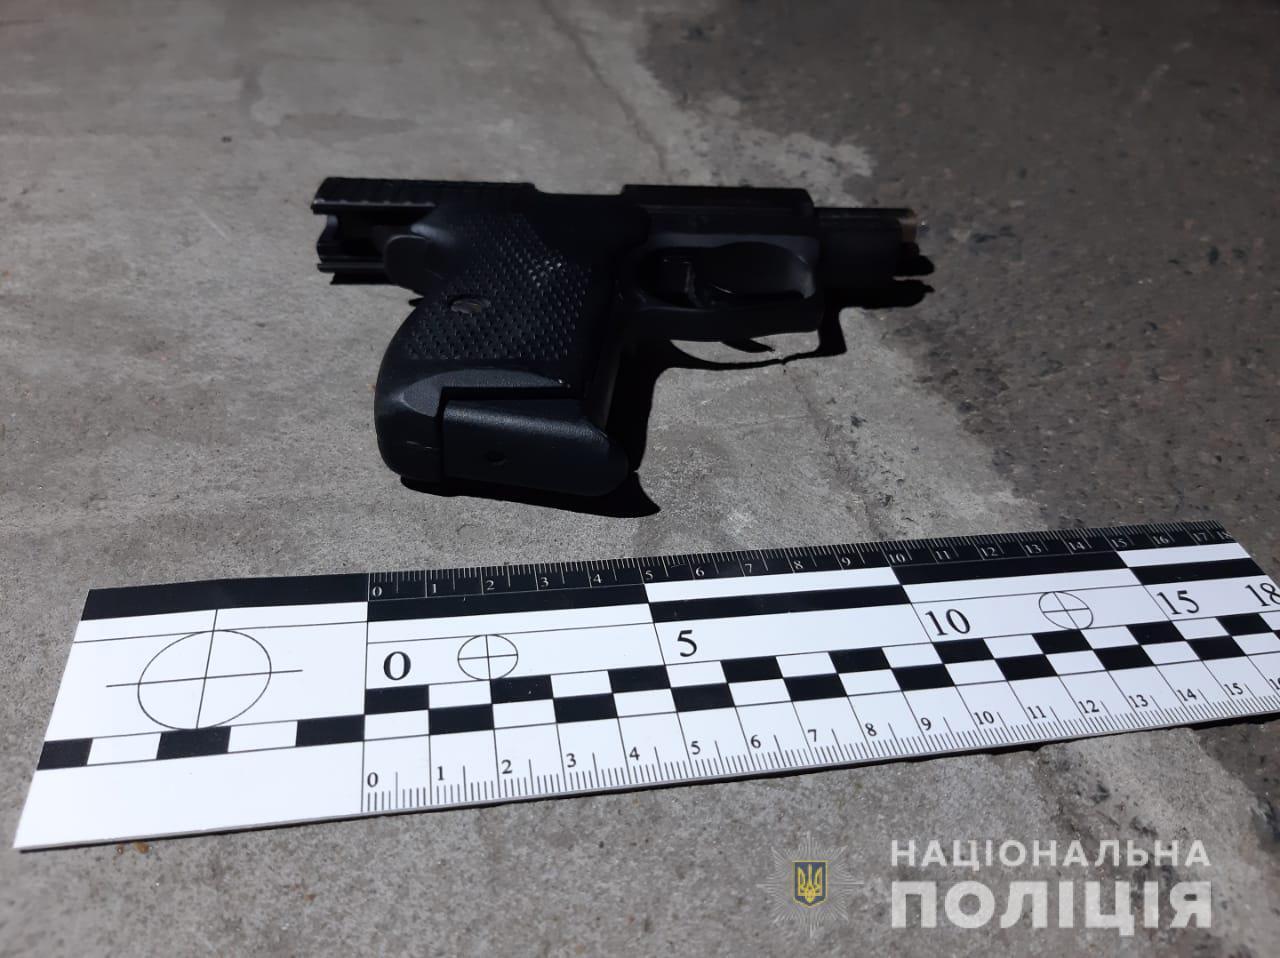 Поліція розпочала кримінальне провадження за фактом озброєного хуліганства в одеському ресторані